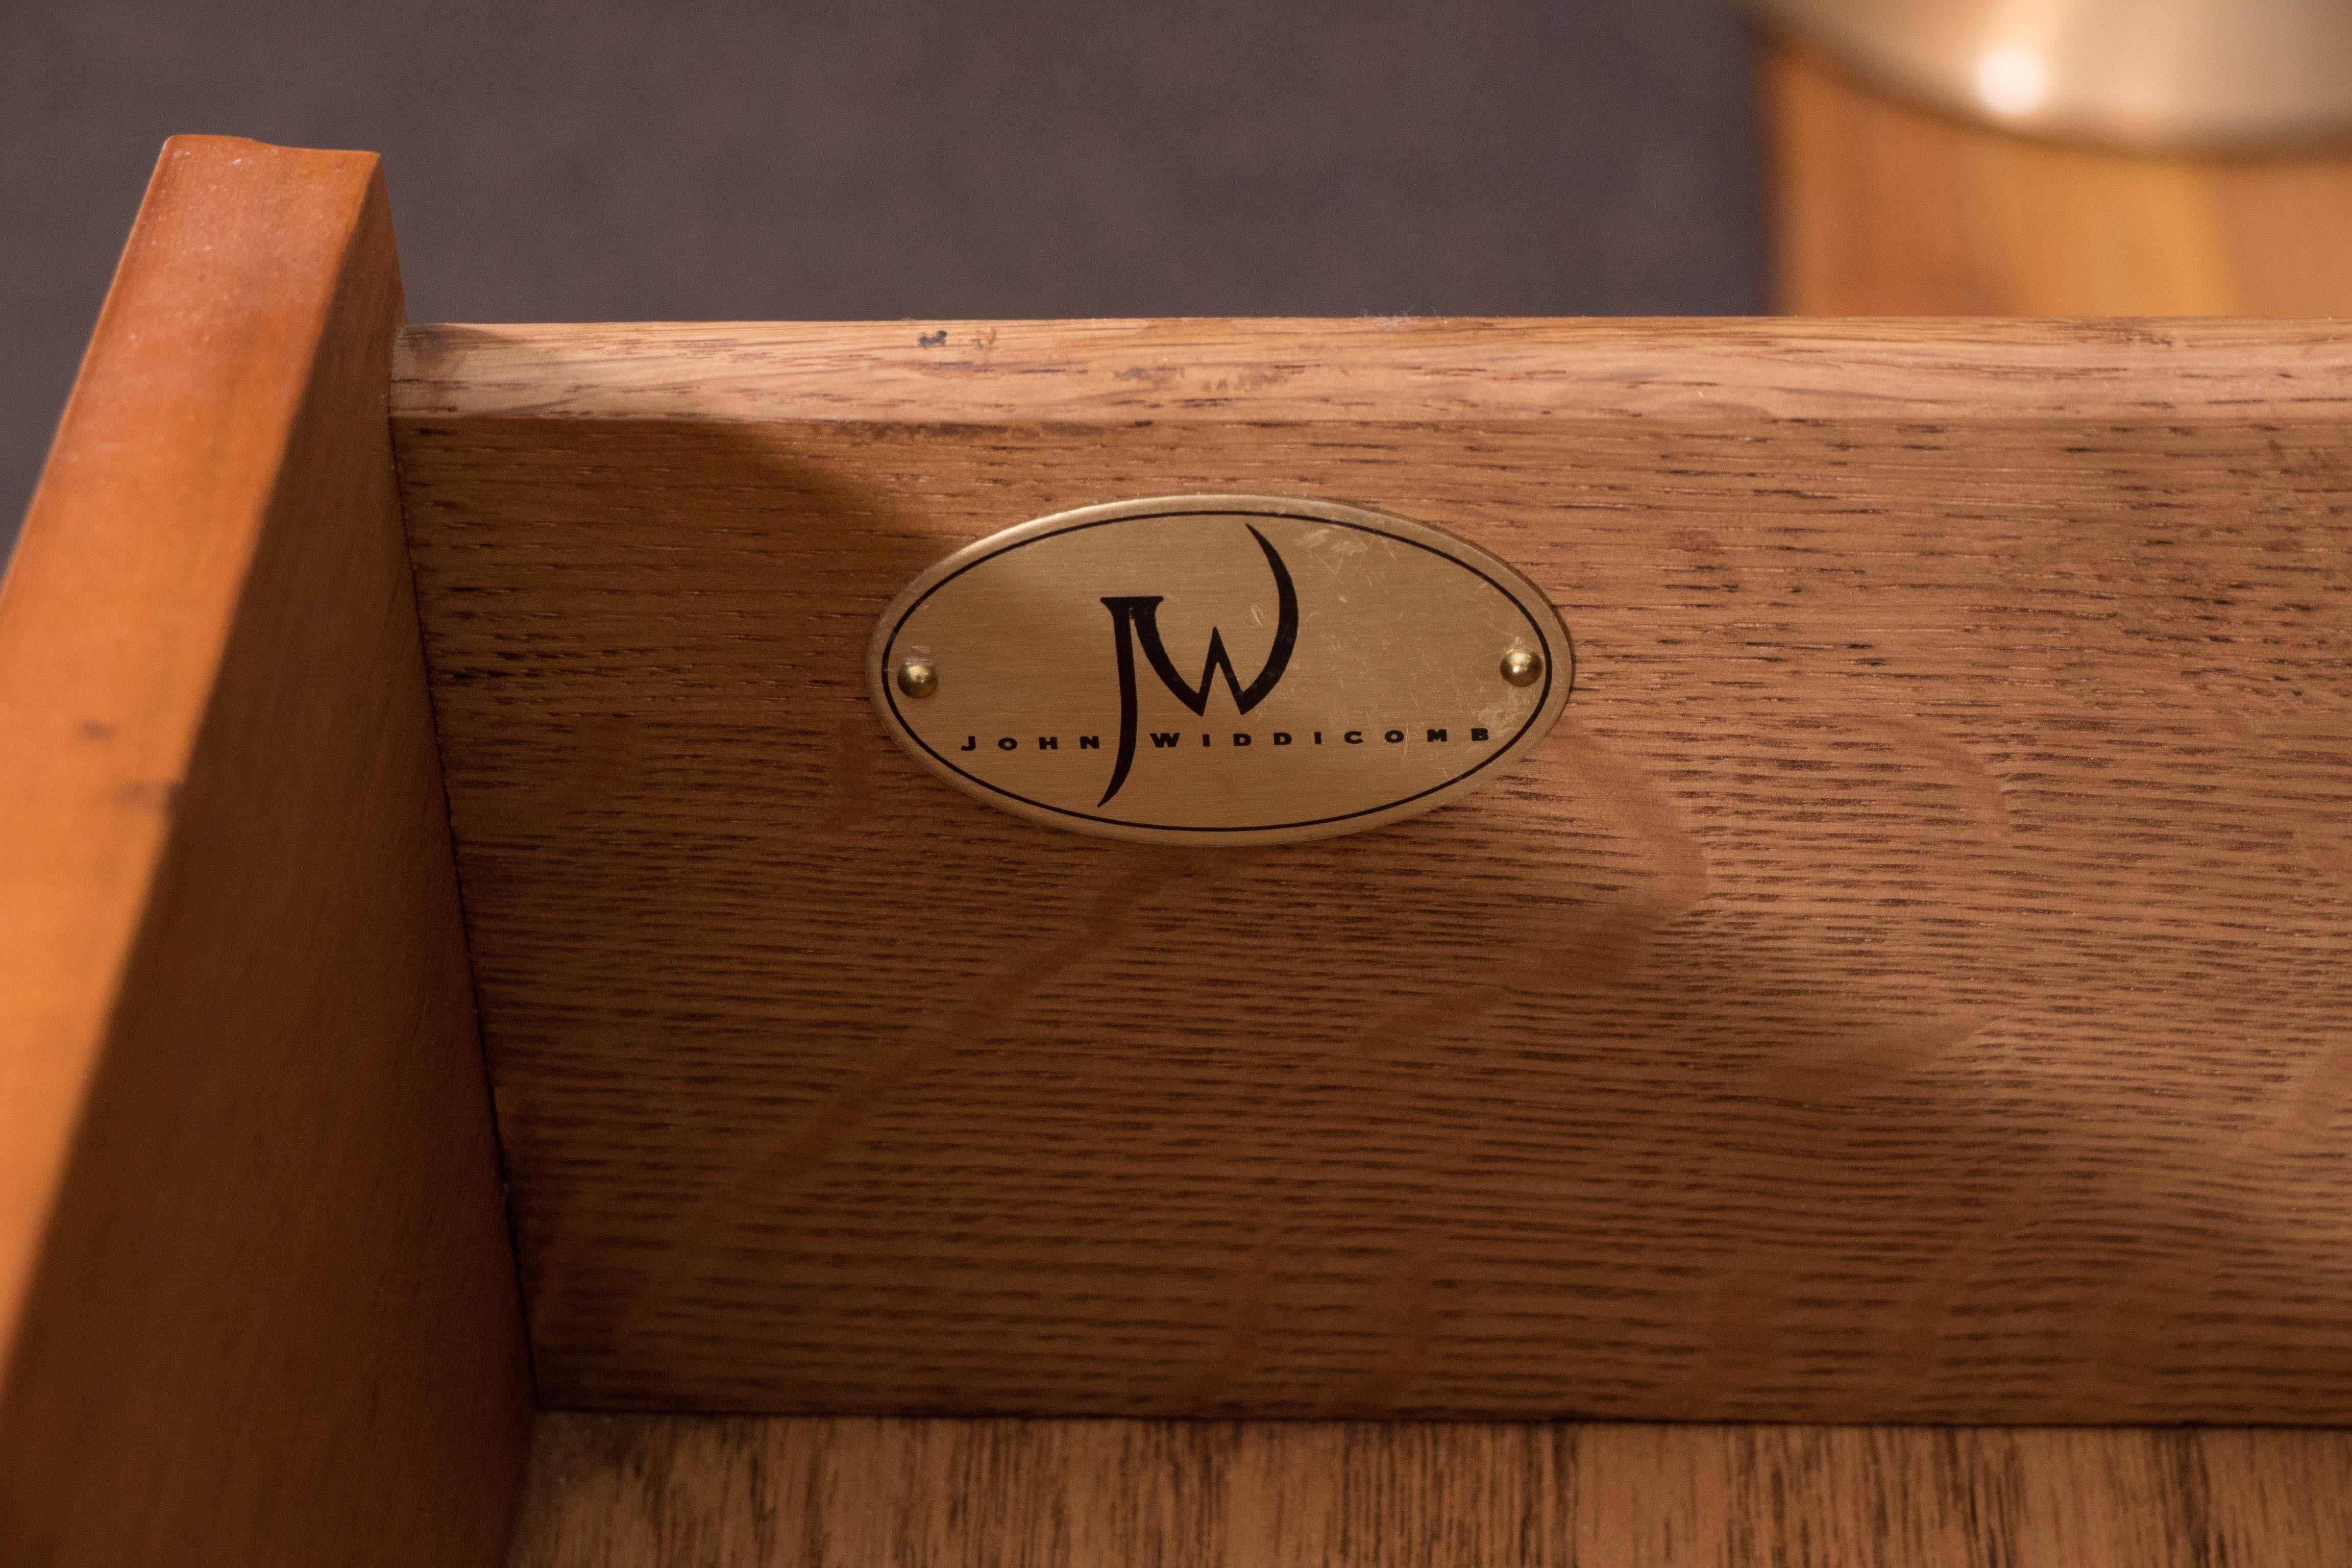 John Widdicomb Three-Drawer Dresser and Nightstand 1